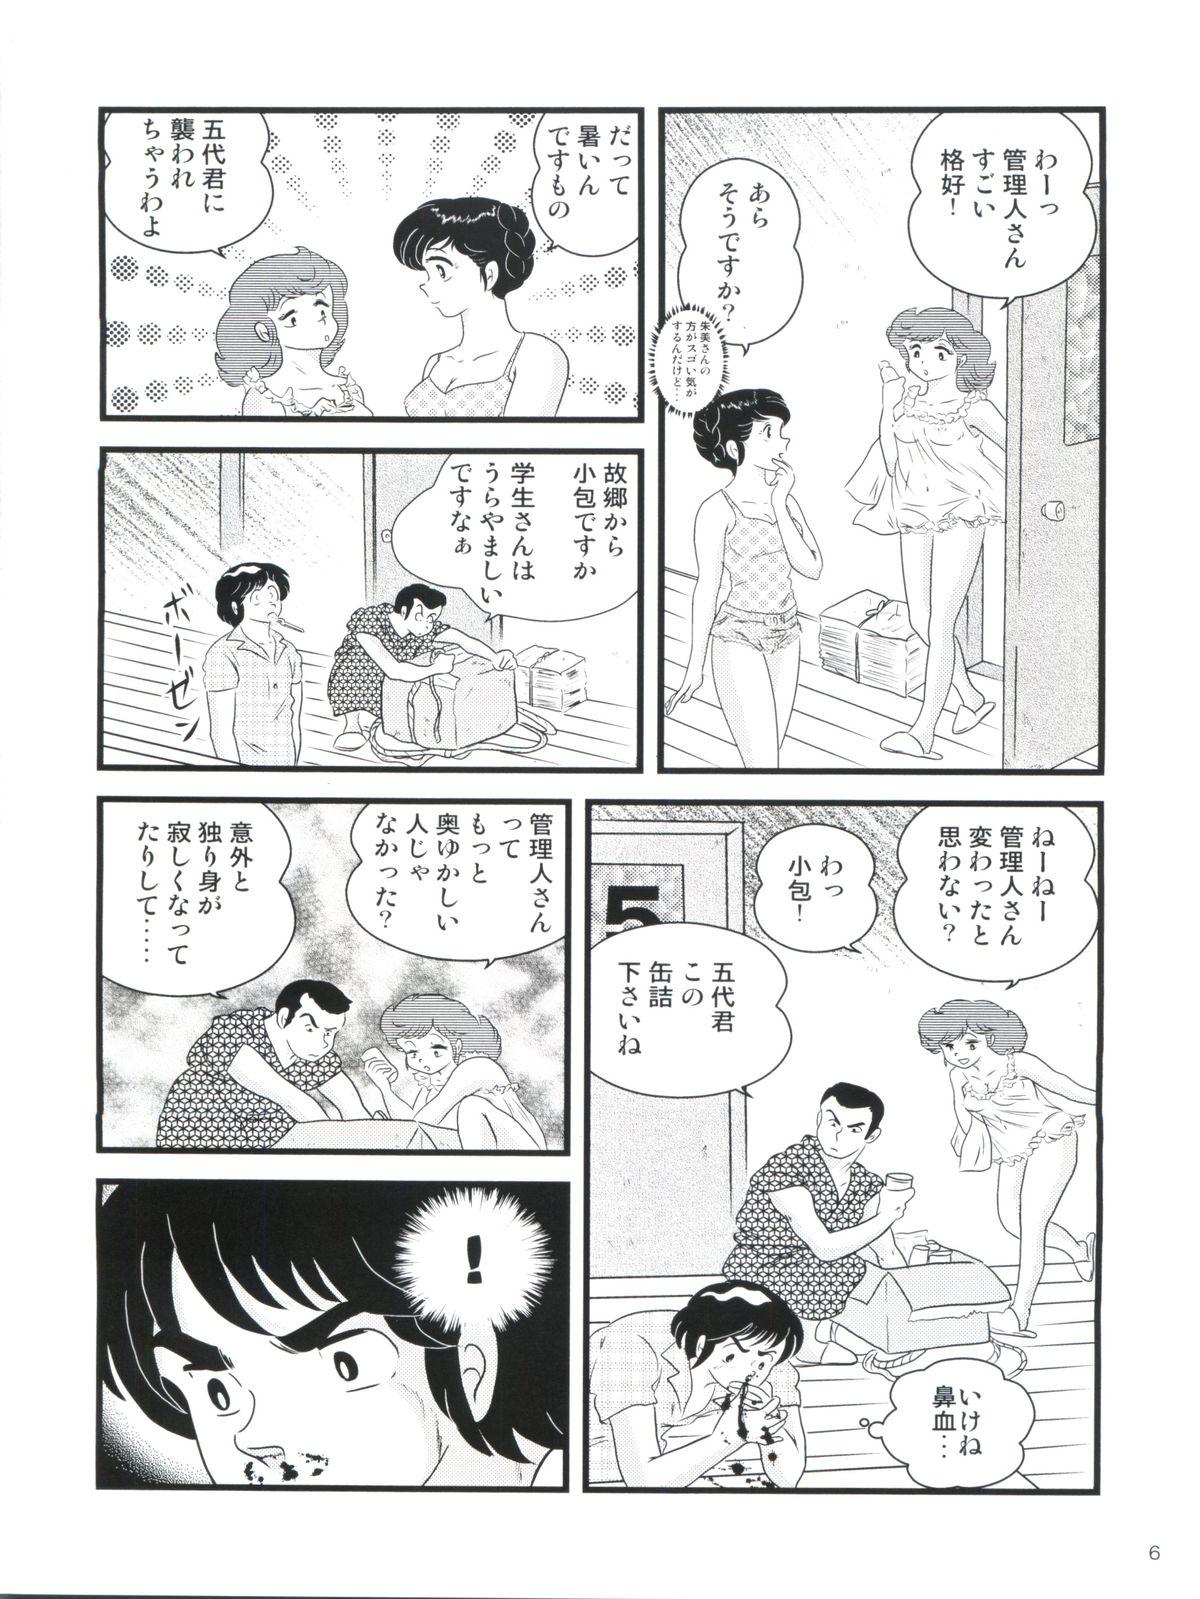 Upskirt Fairy 14 - Maison ikkoku Young Men - Page 10